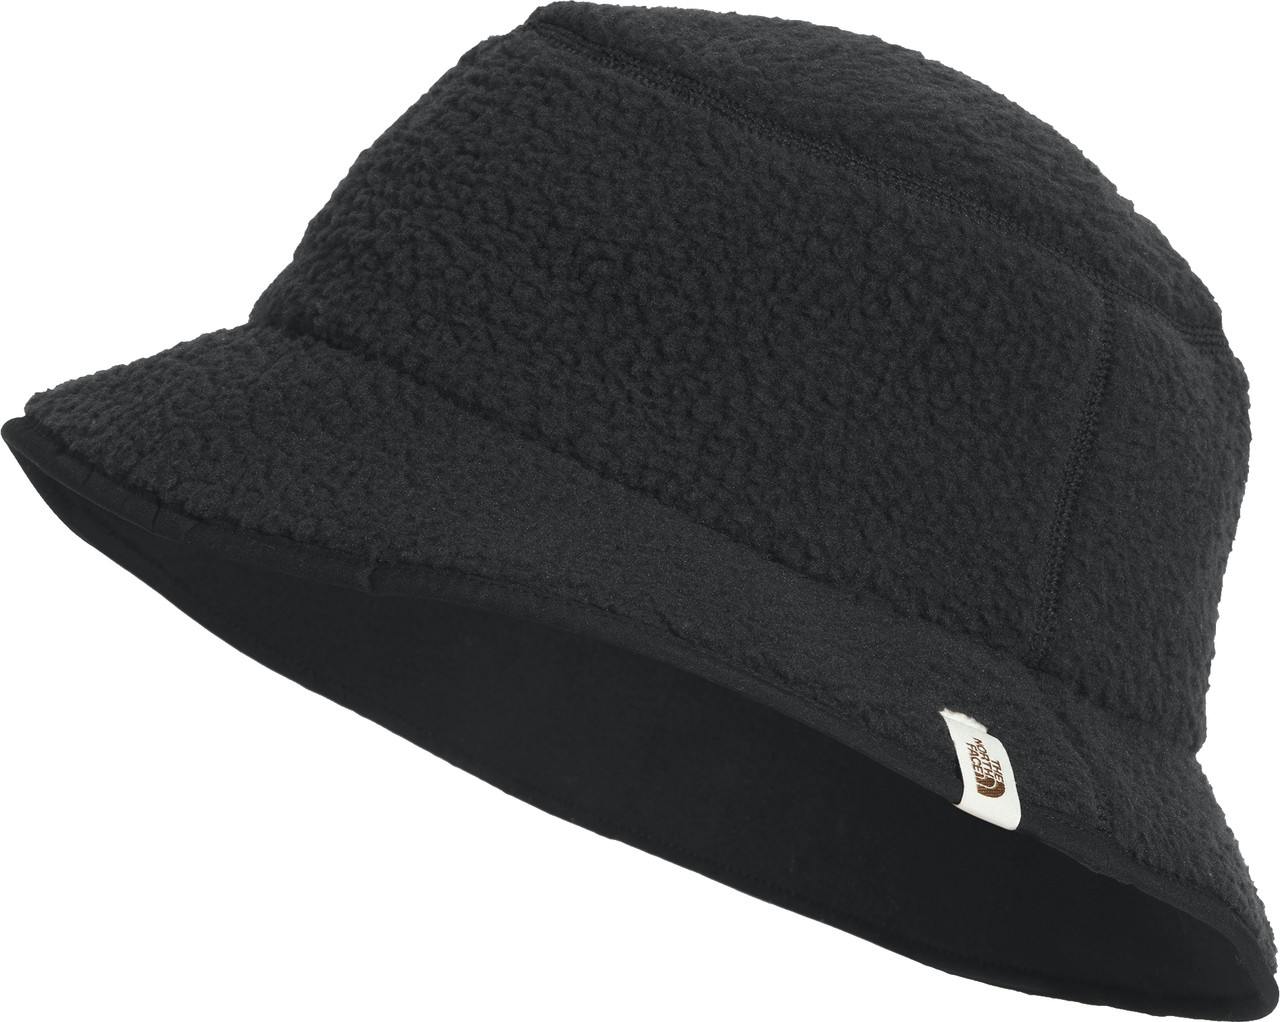 Cragmont Bucket Hat TNF Black